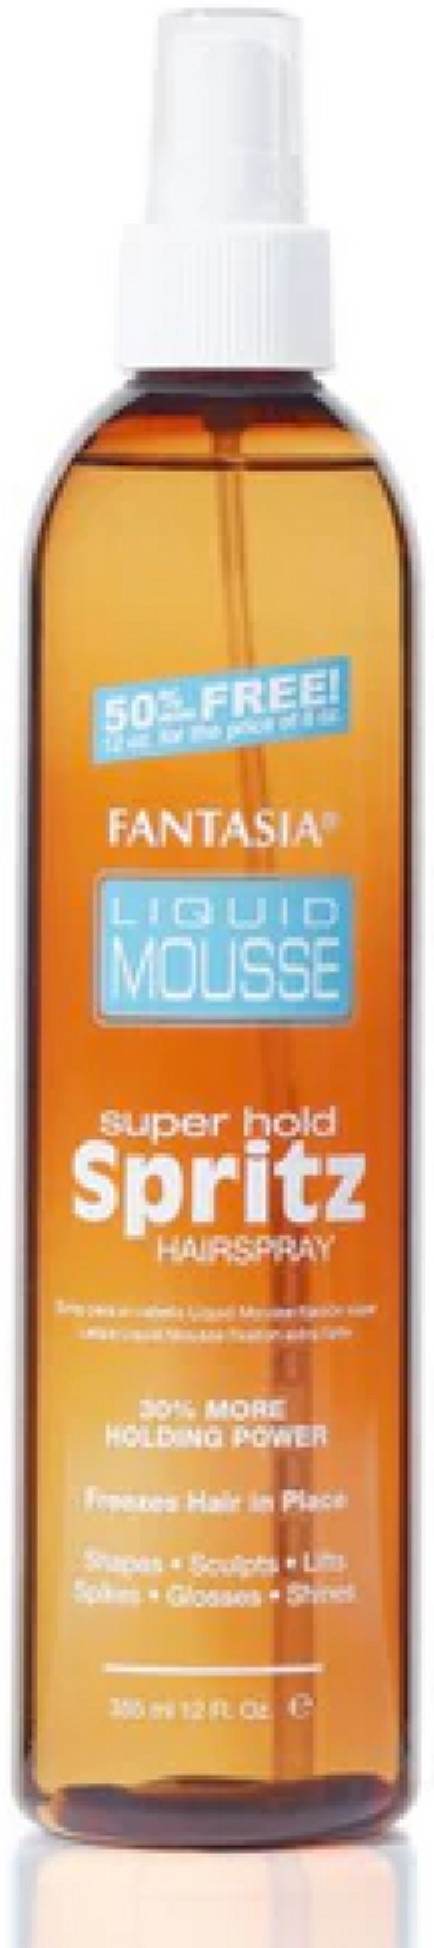 Fantasia Liquid Mousse 12oz